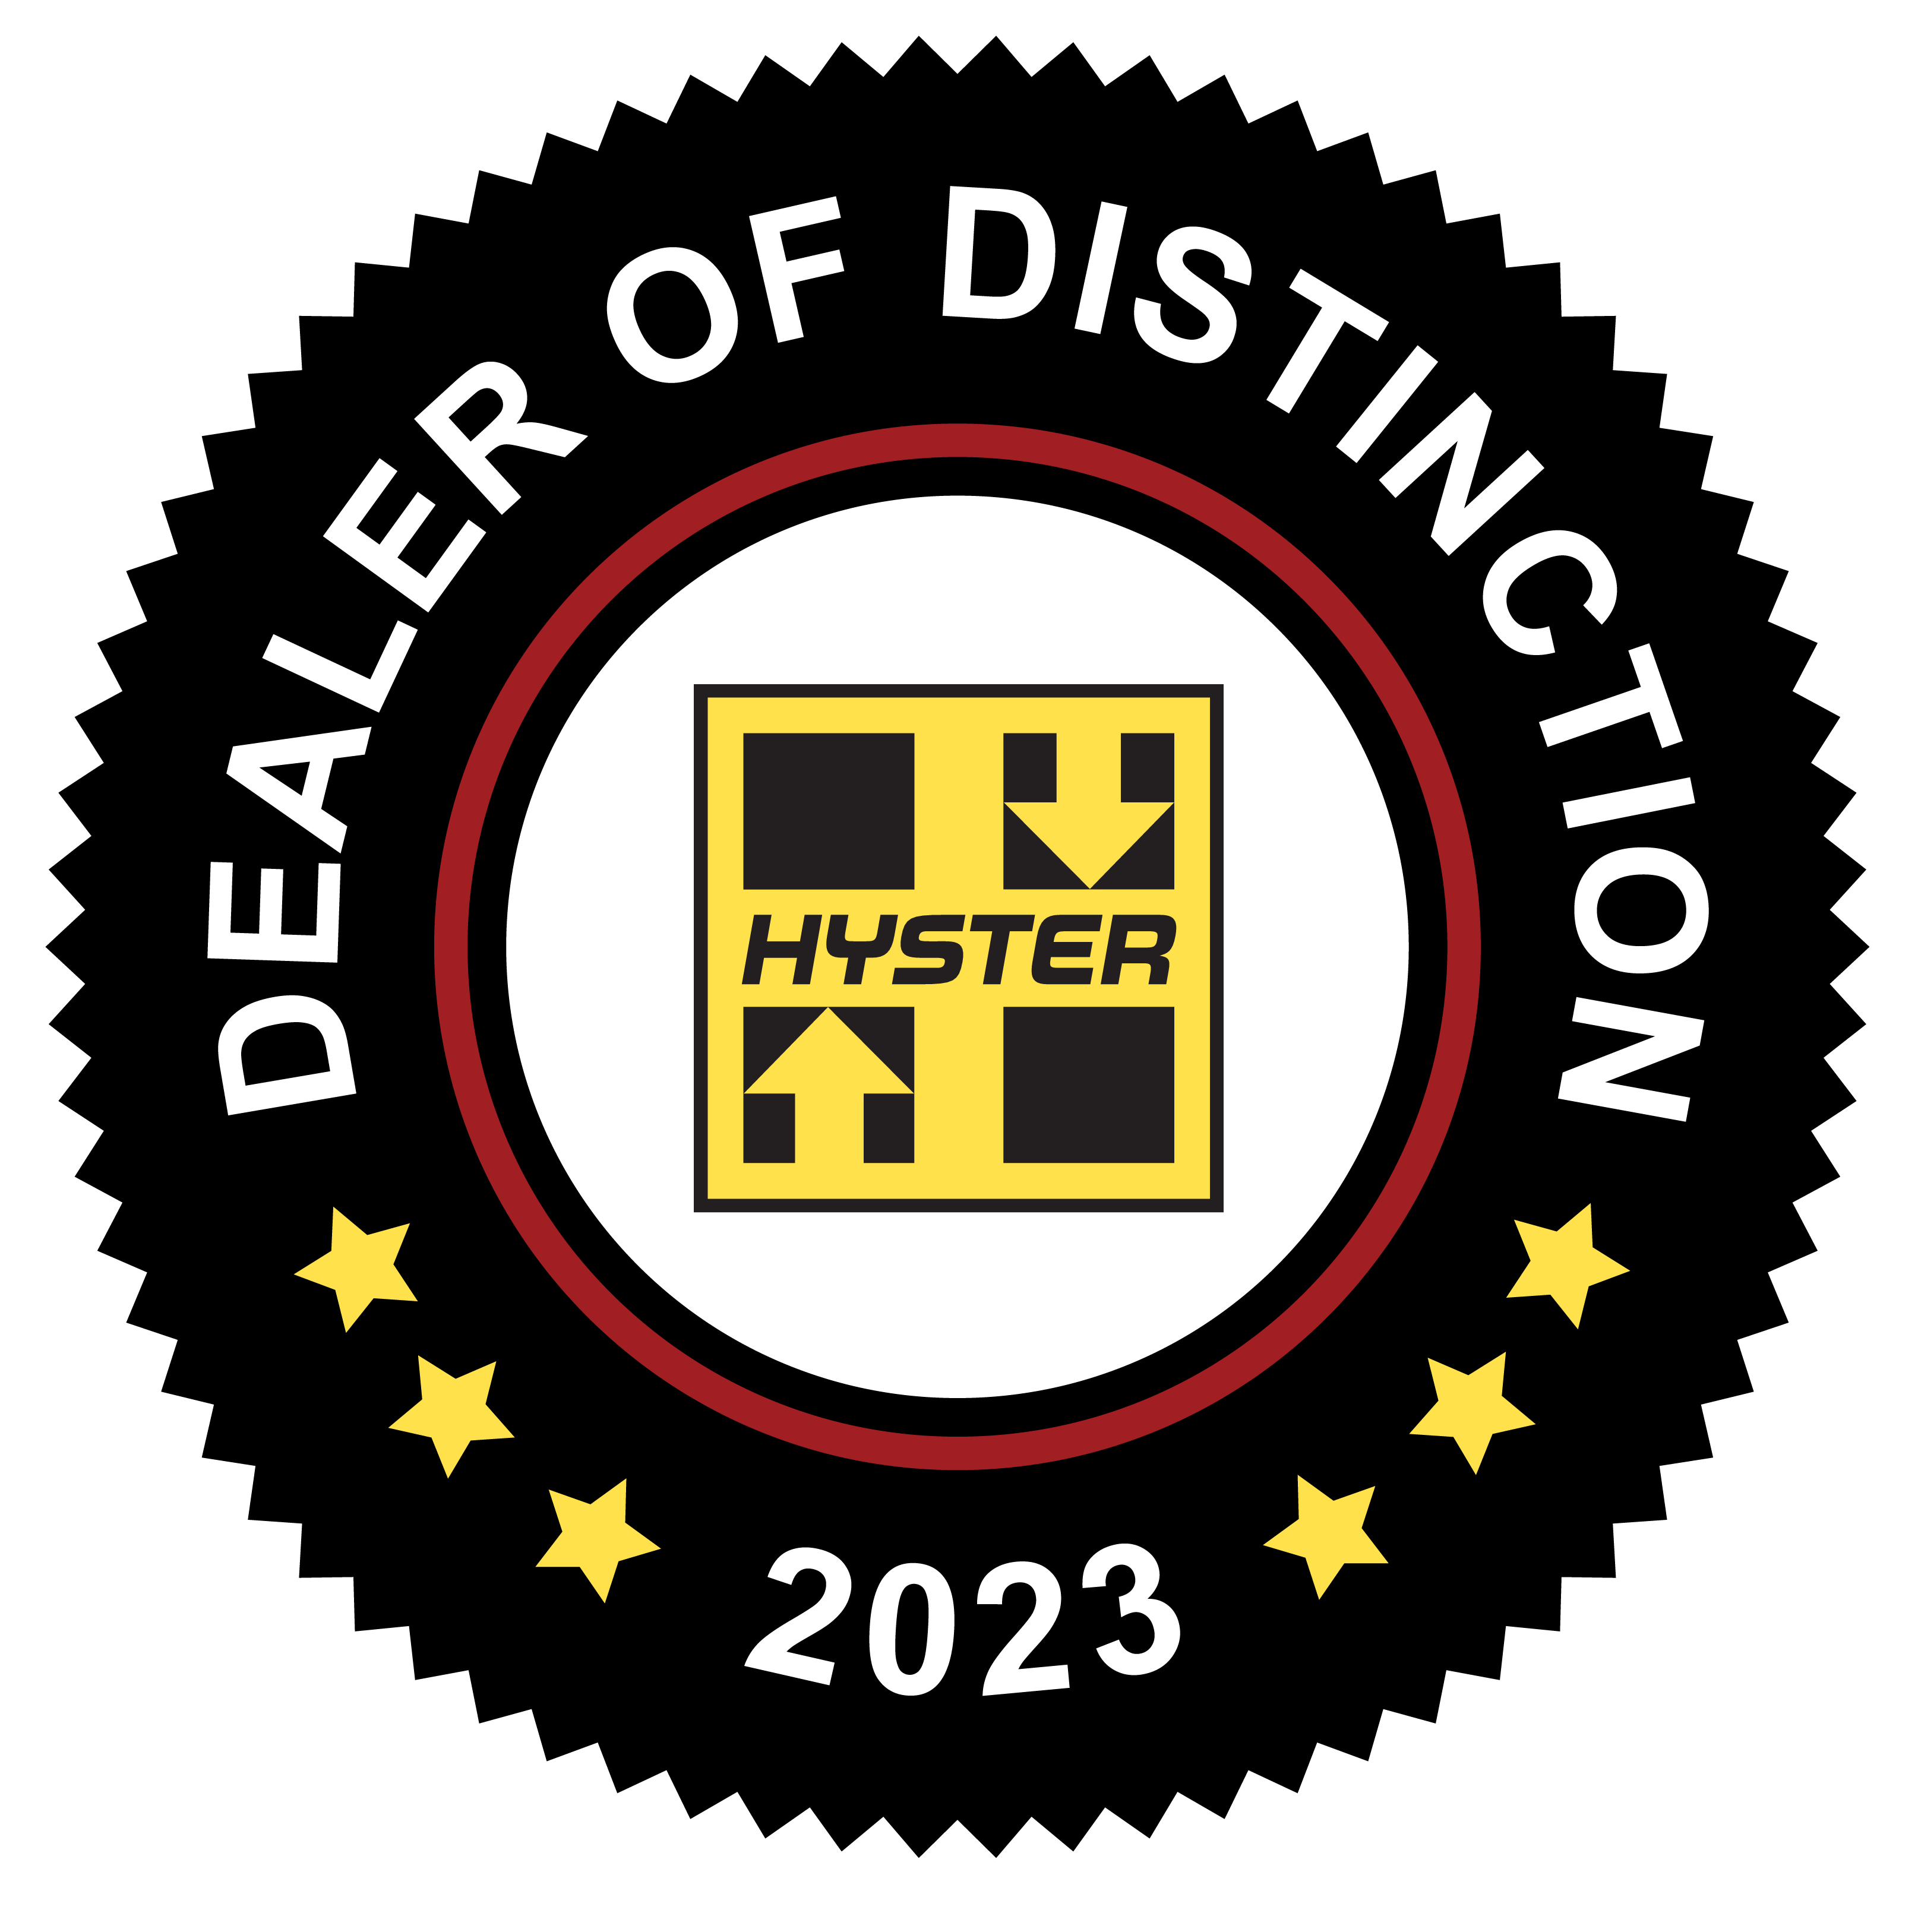 Hyster 2023 Dealer of Distinction Logo